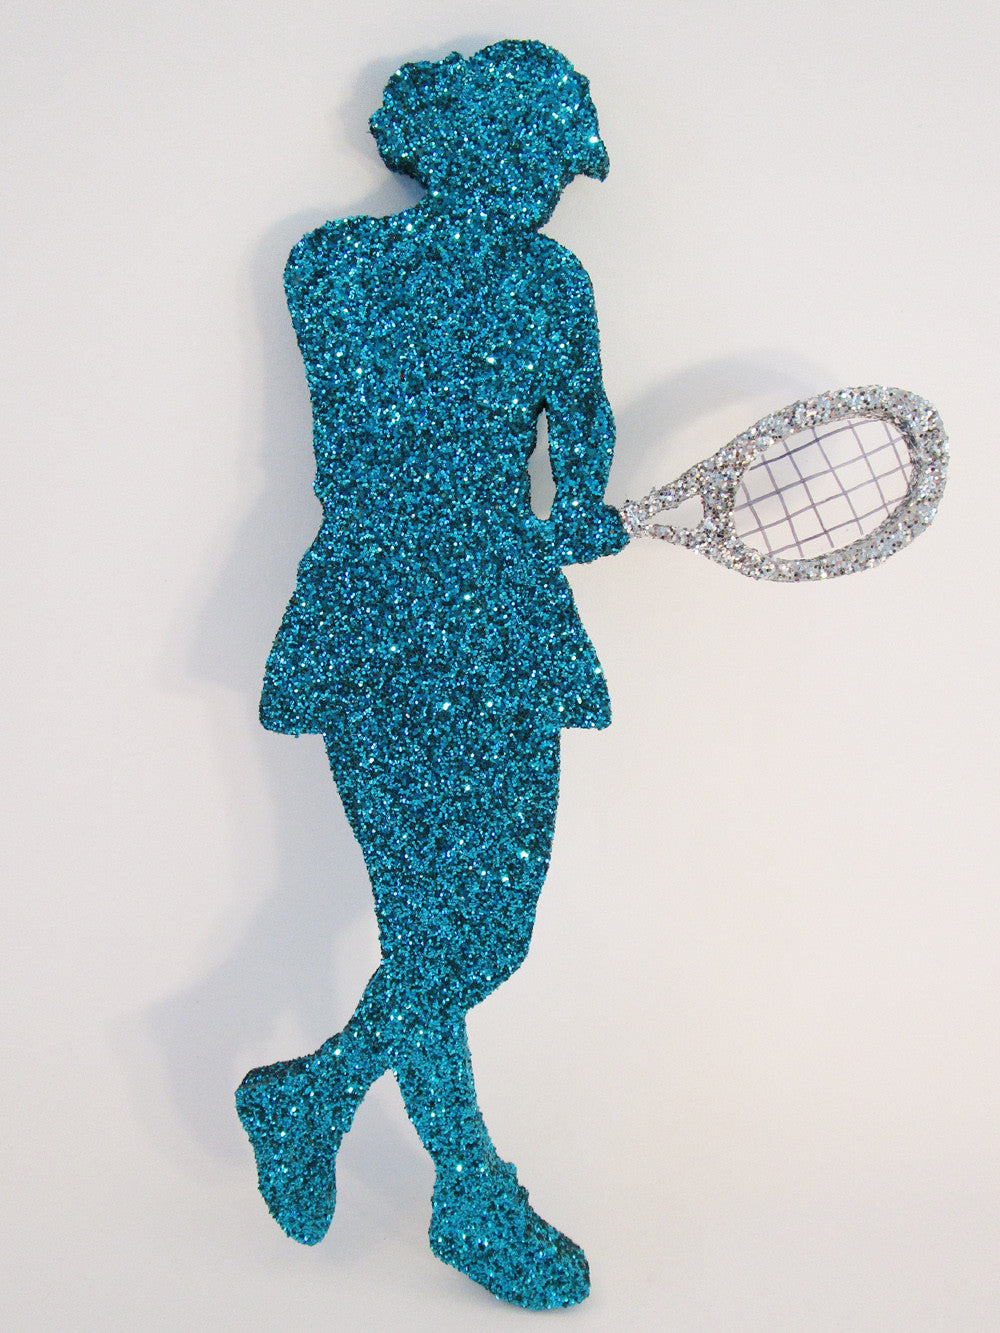 Styrofoam female tennis player cutout - Designs by Ginny